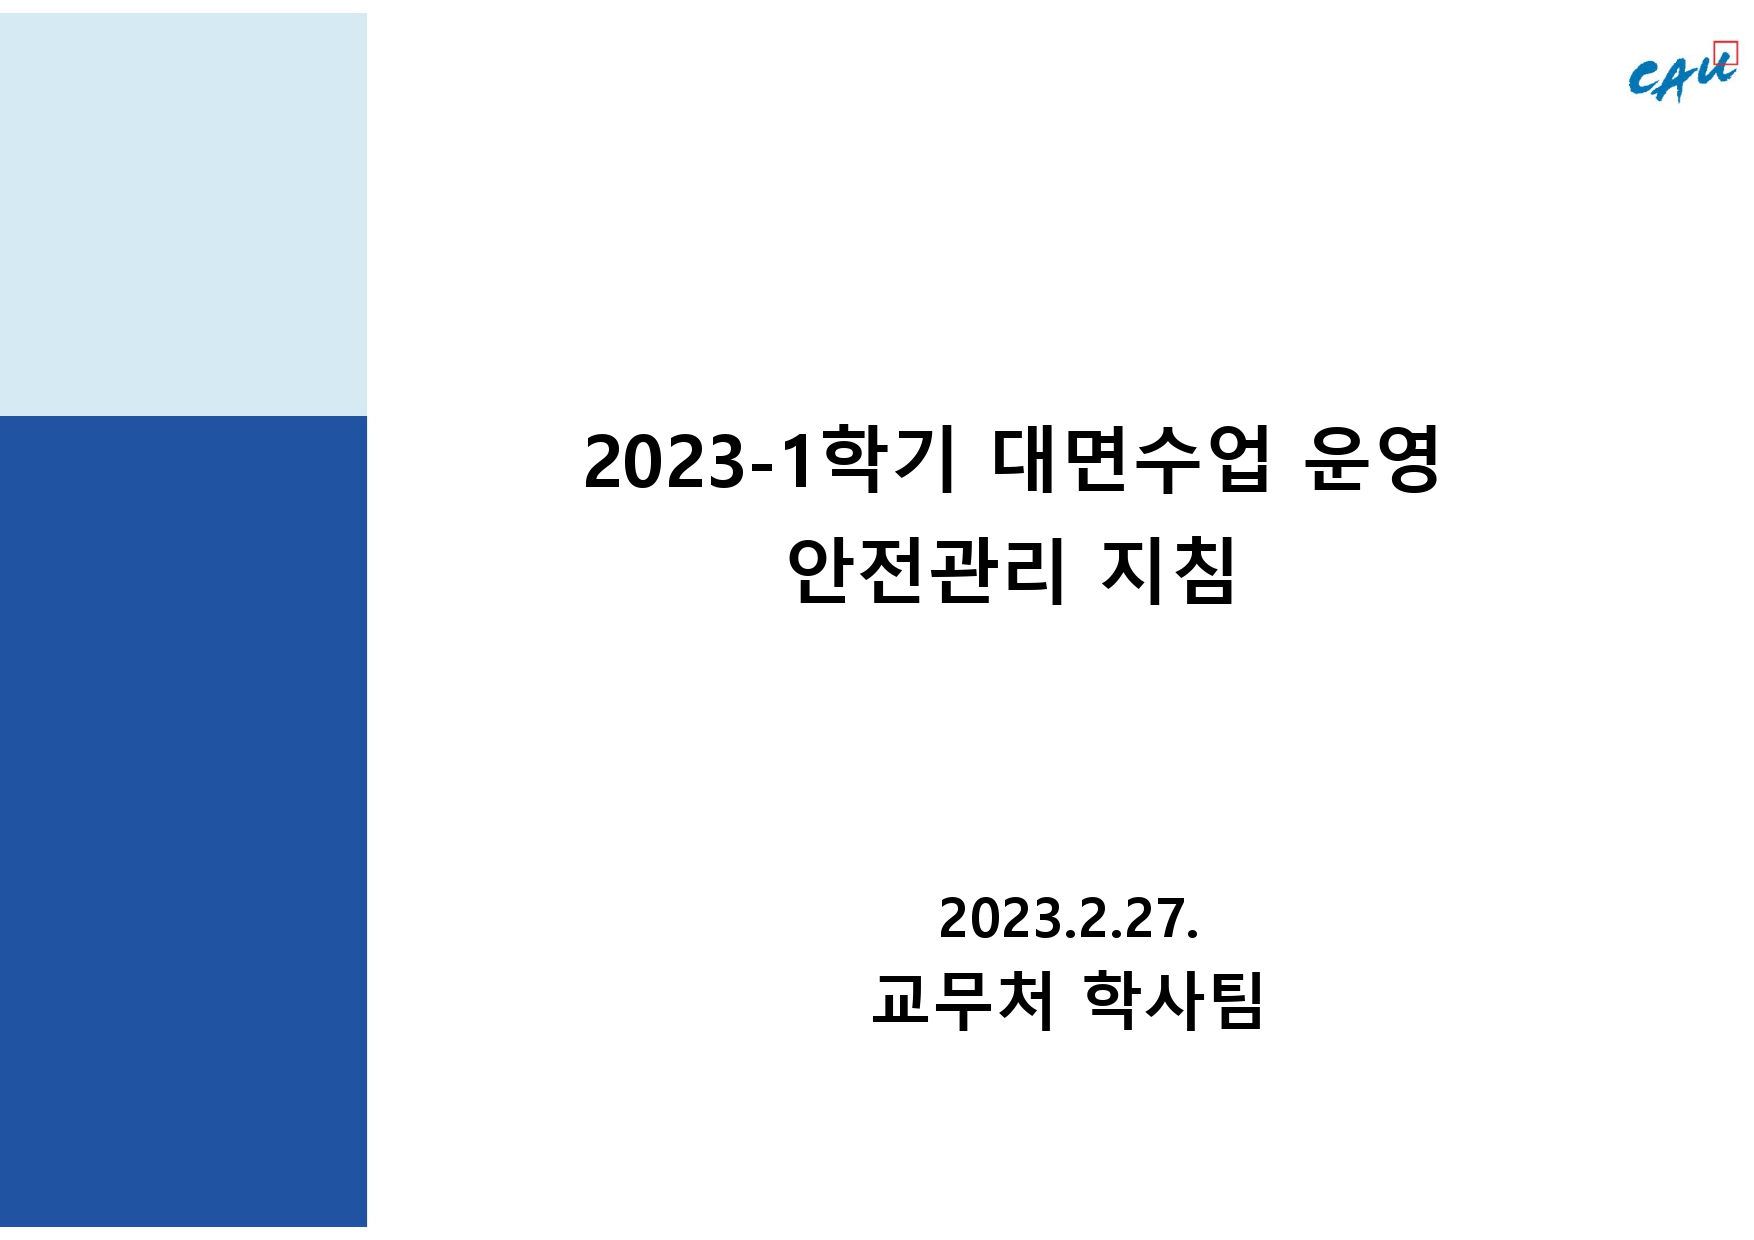 붙임 1. 2023-1학기 대면수업 운영 안전관리 지침_출석인정 포함.jpg